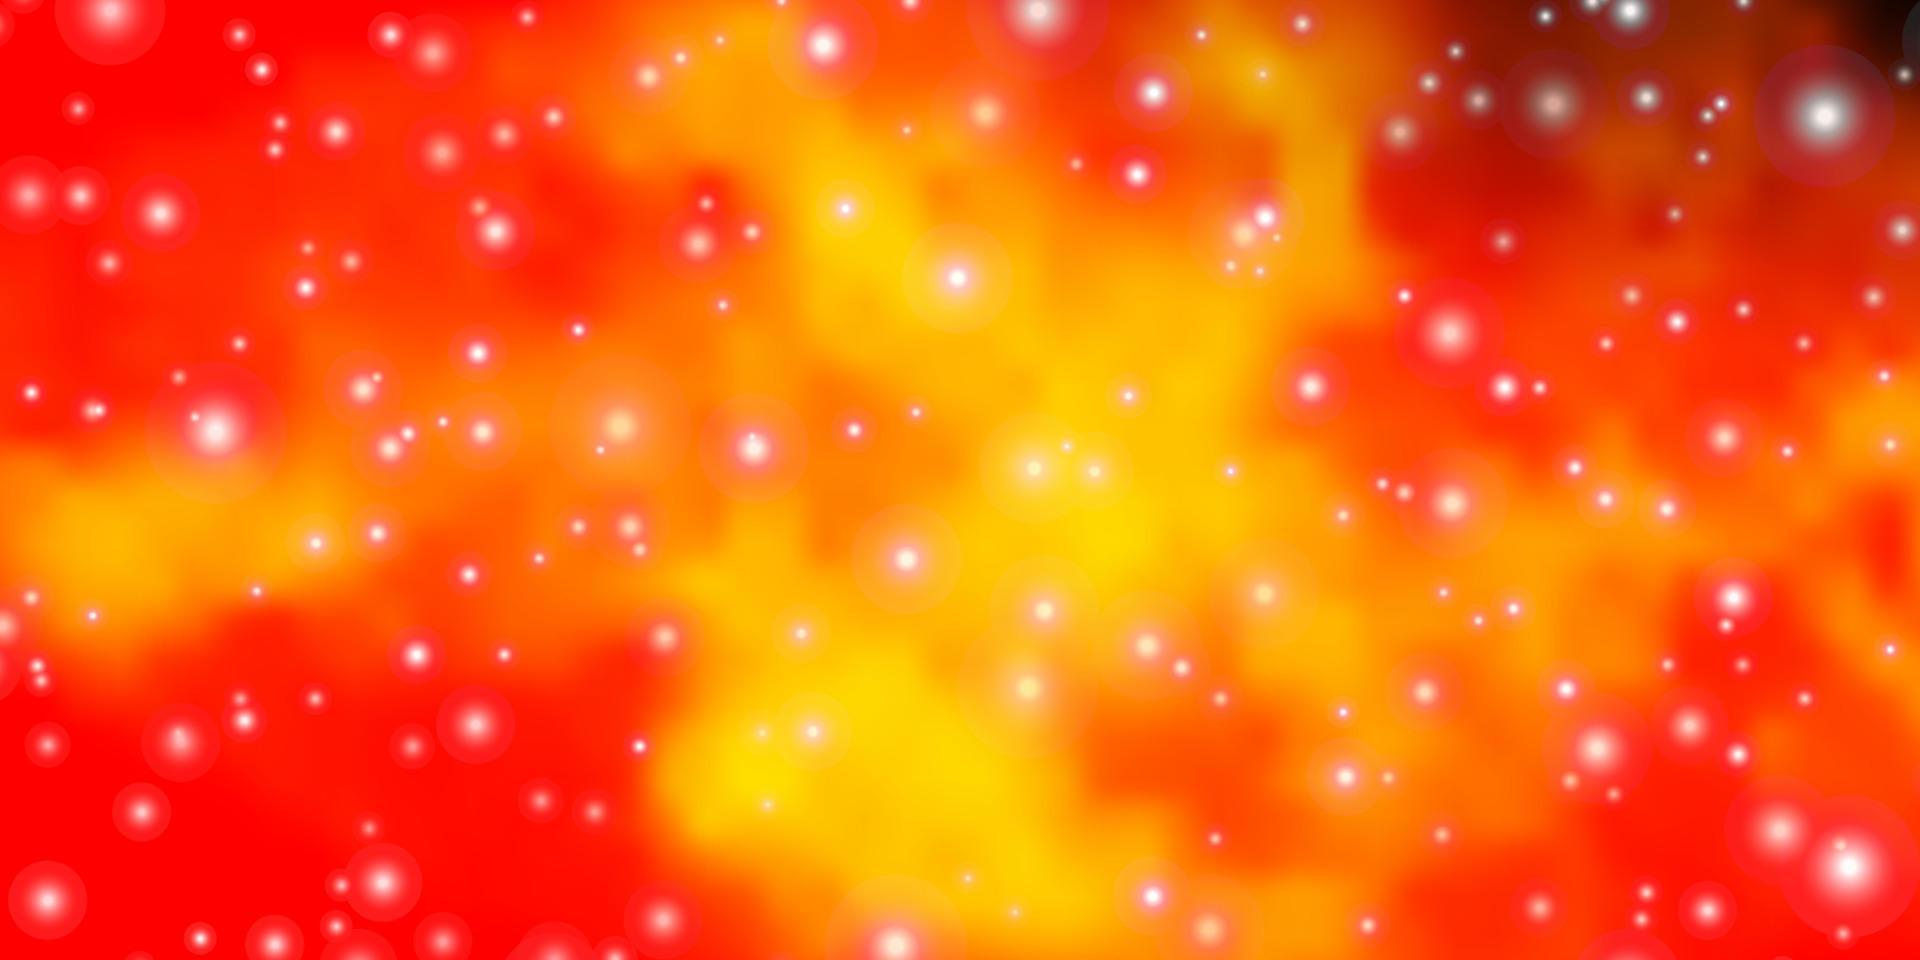 fundo laranja escuro do vetor com estrelas pequenas e grandes.